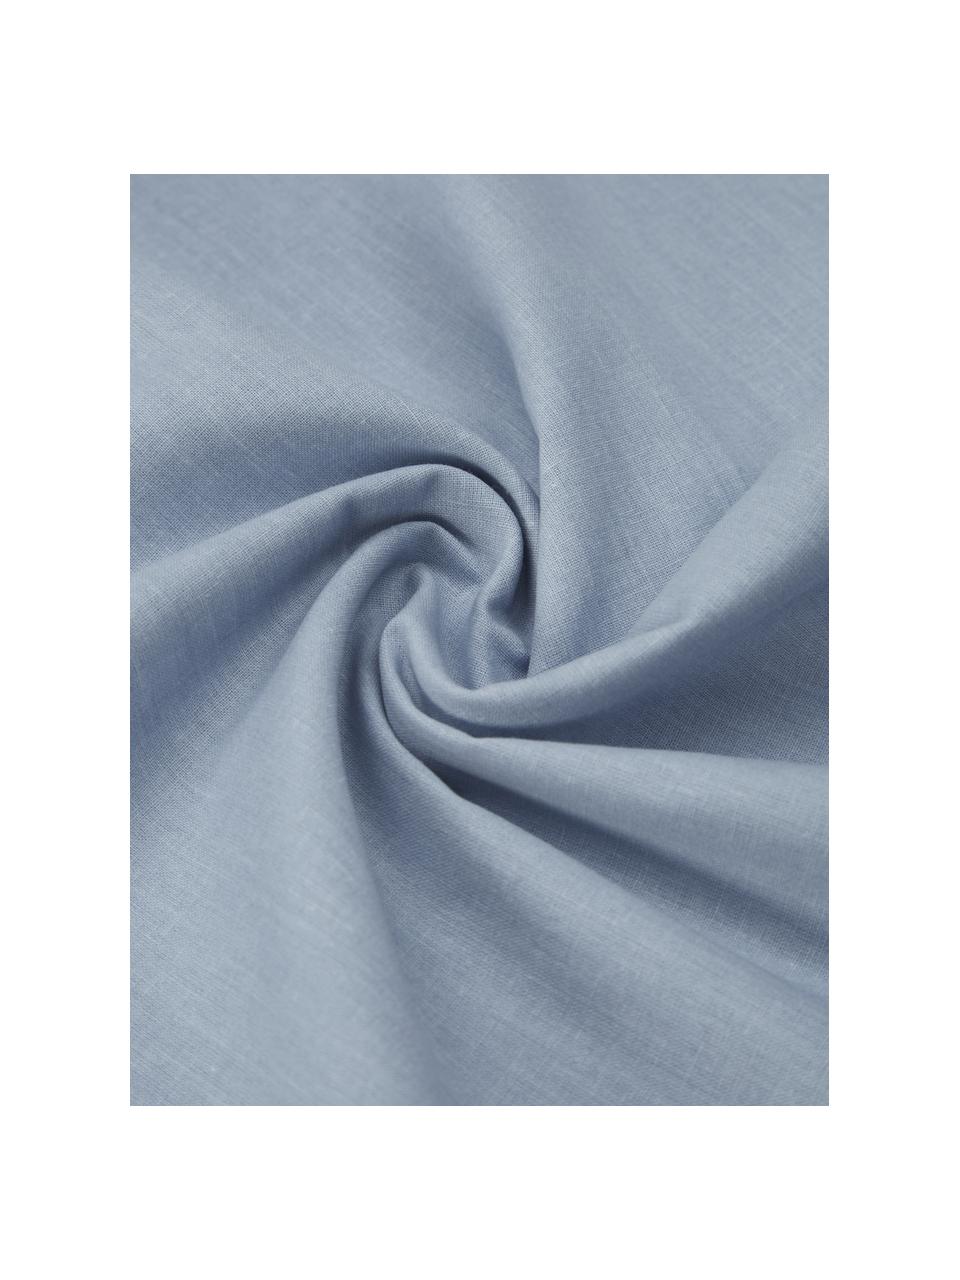 Gewaschene Baumwoll-Bettwäsche Arlene in Blau, Webart: Renforcé Fadendichte 144 , Blau, 200 x 200 cm + 2 Kissen 80 x 80 cm